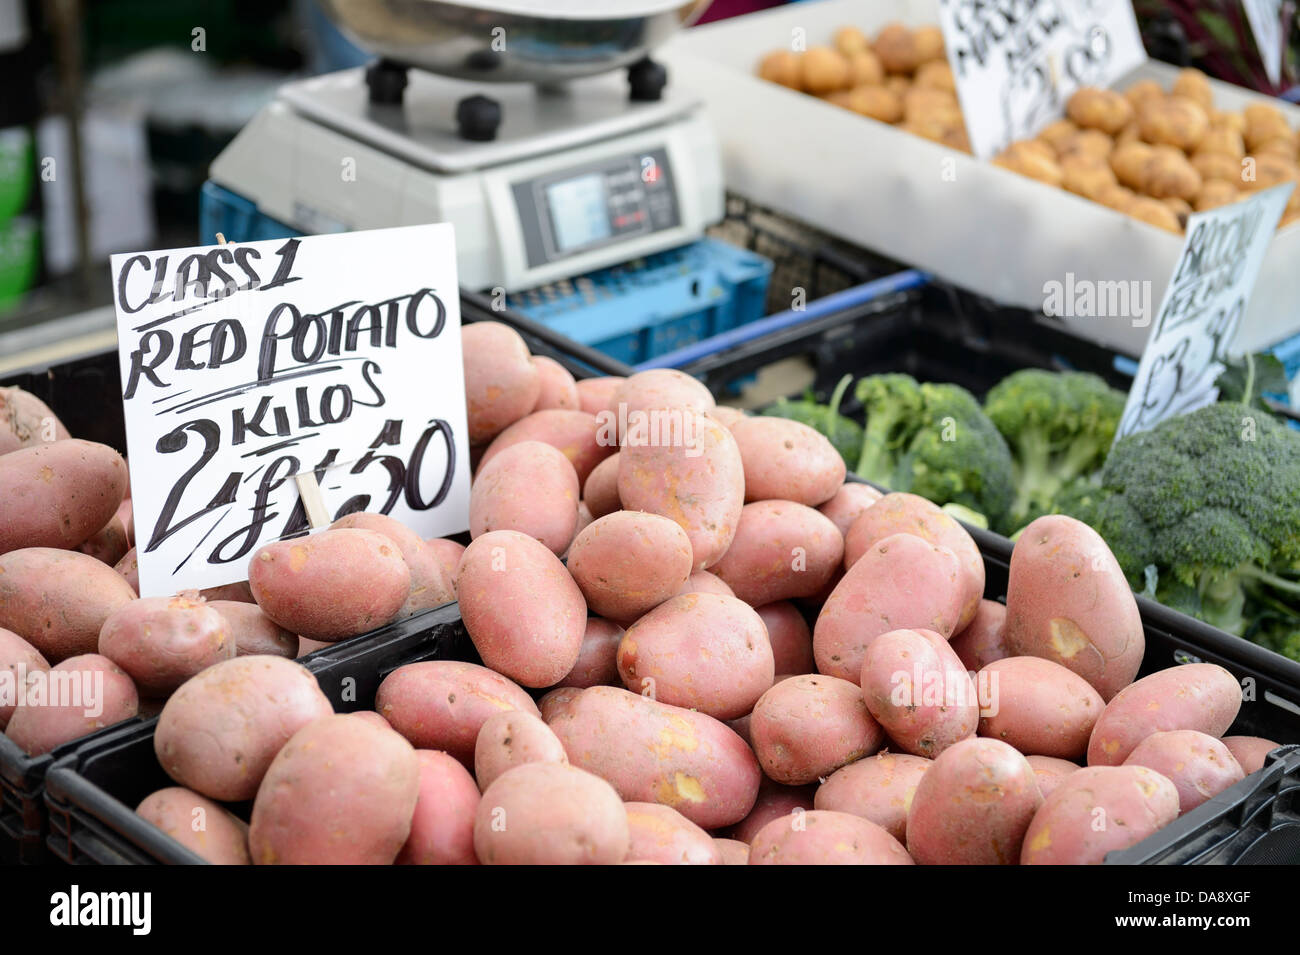 Un choix typique de fruits et légumes frais vendus au marché de Boston. Boston, England, UK, 2013. Banque D'Images